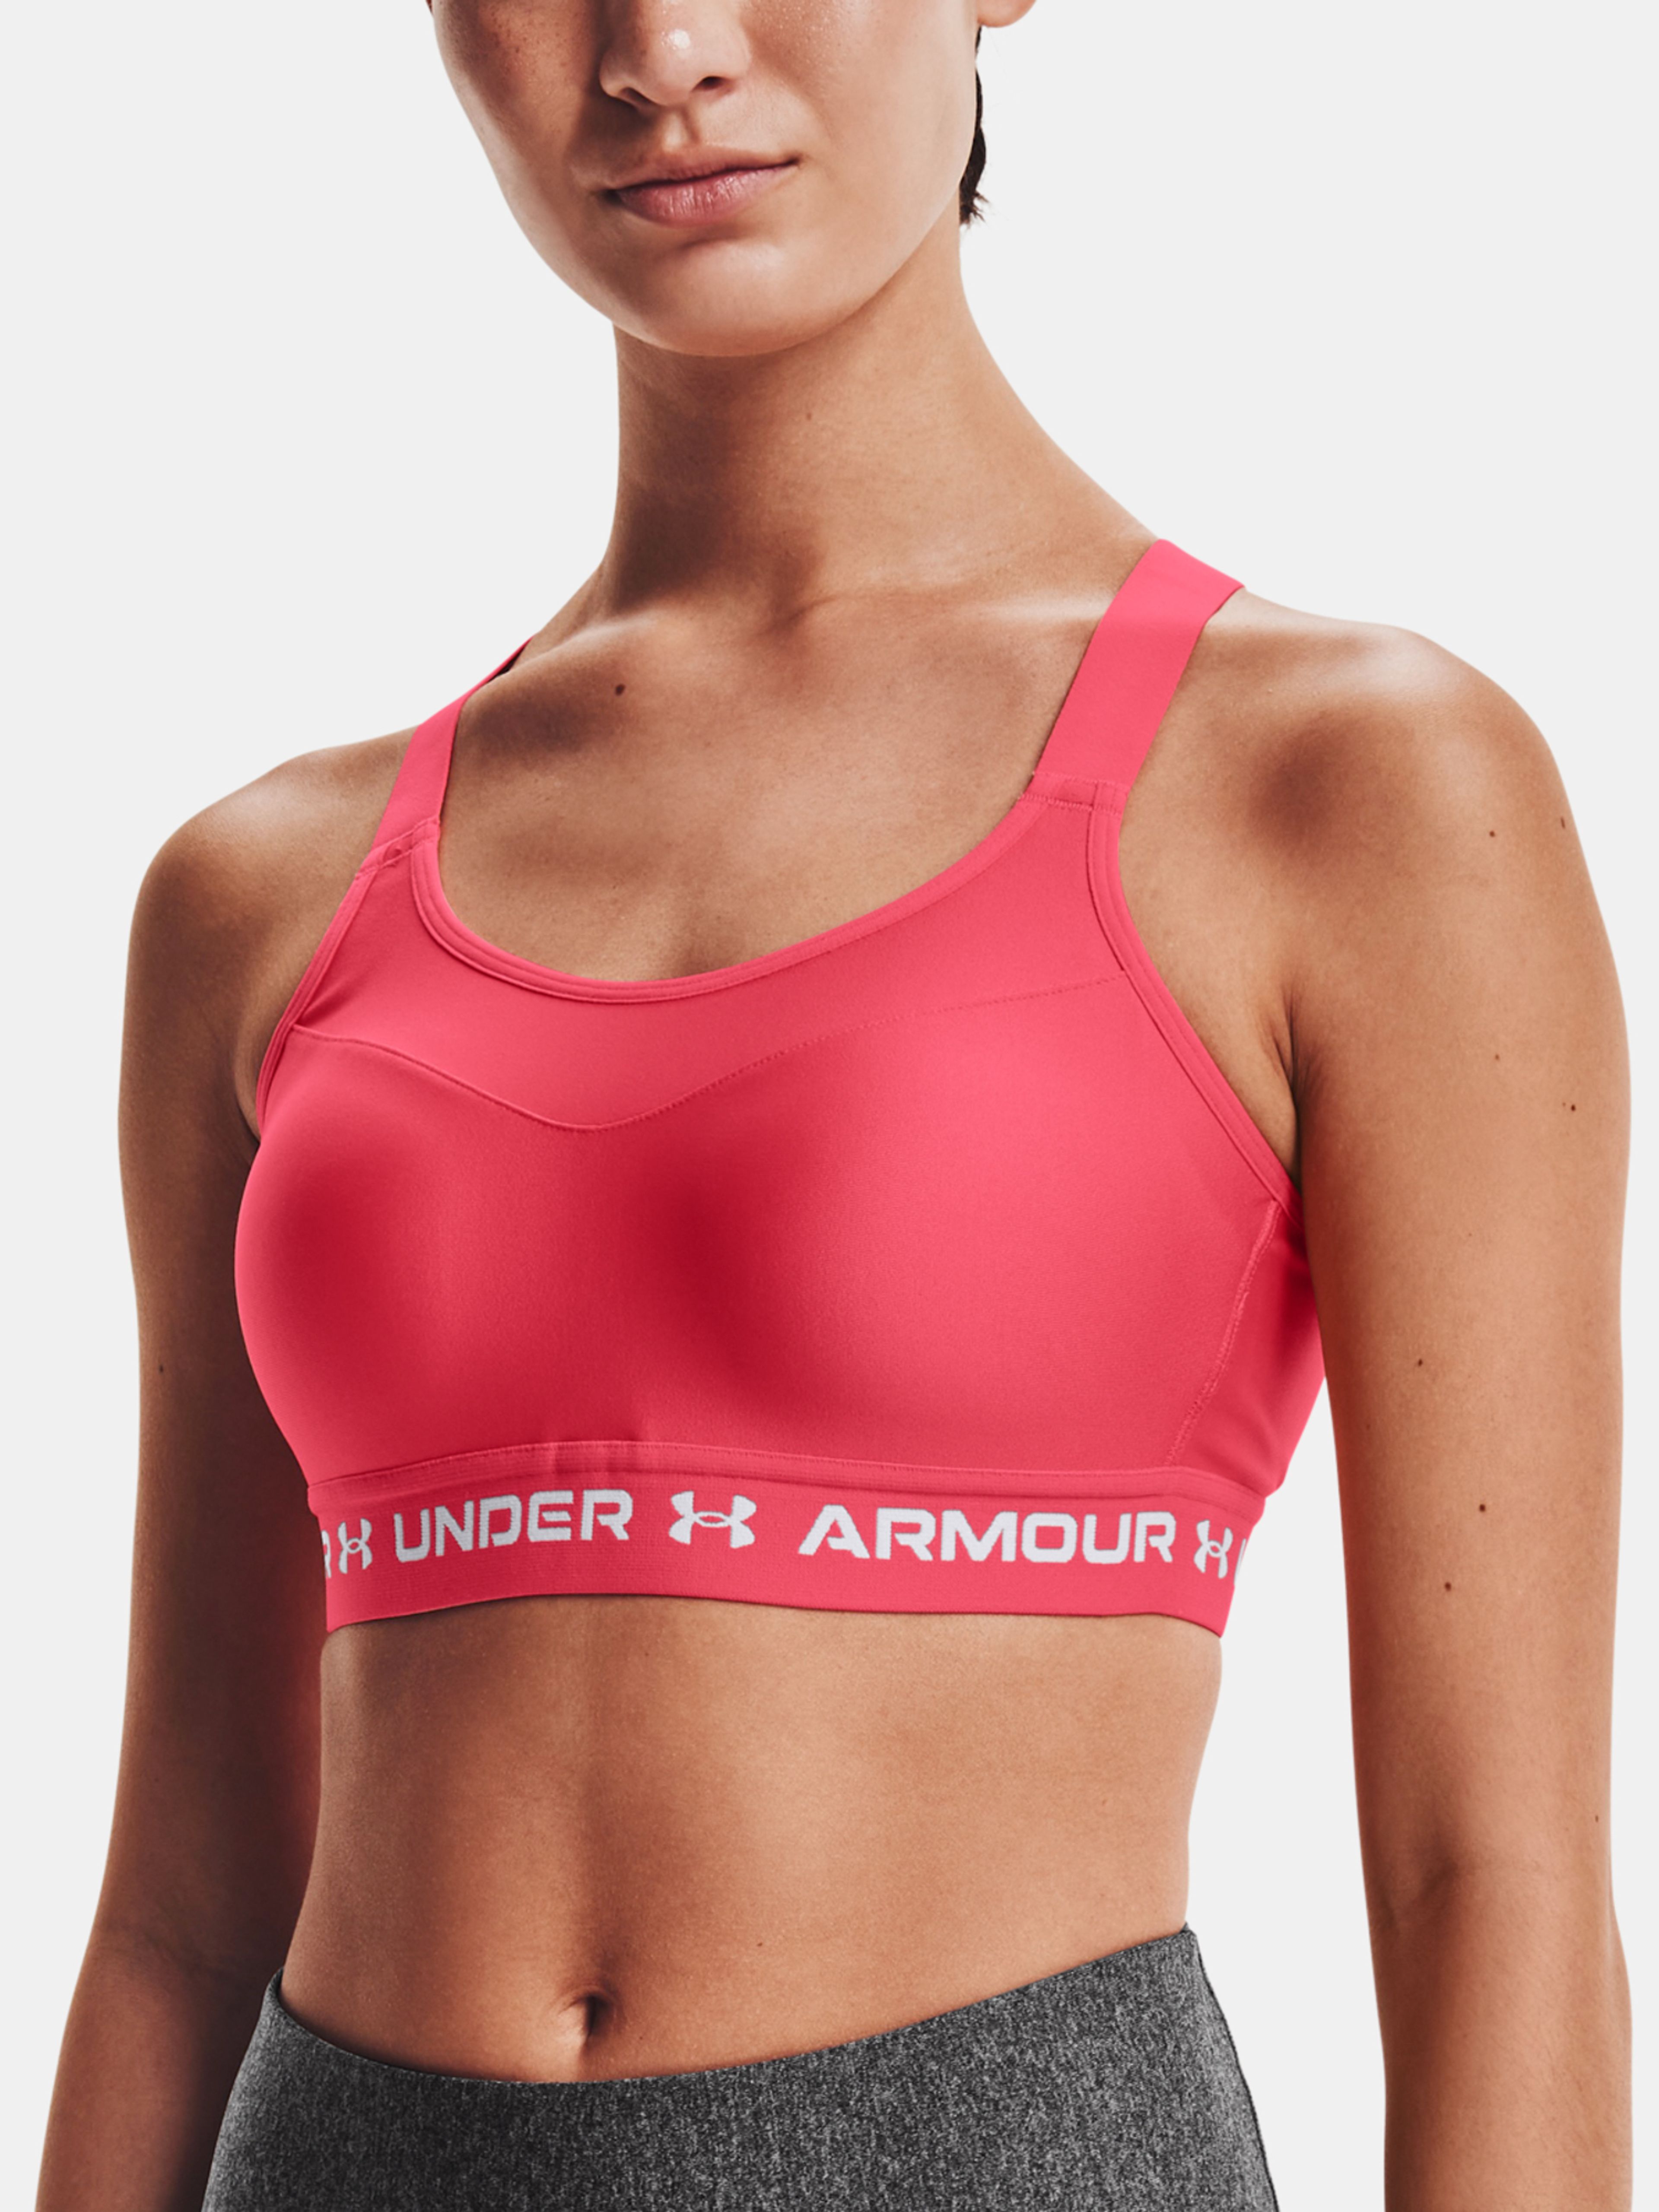  Armour High Crossback Bra, Black - sports bra - UNDER ARMOUR  - 41.35 € - outdoorové oblečení a vybavení shop